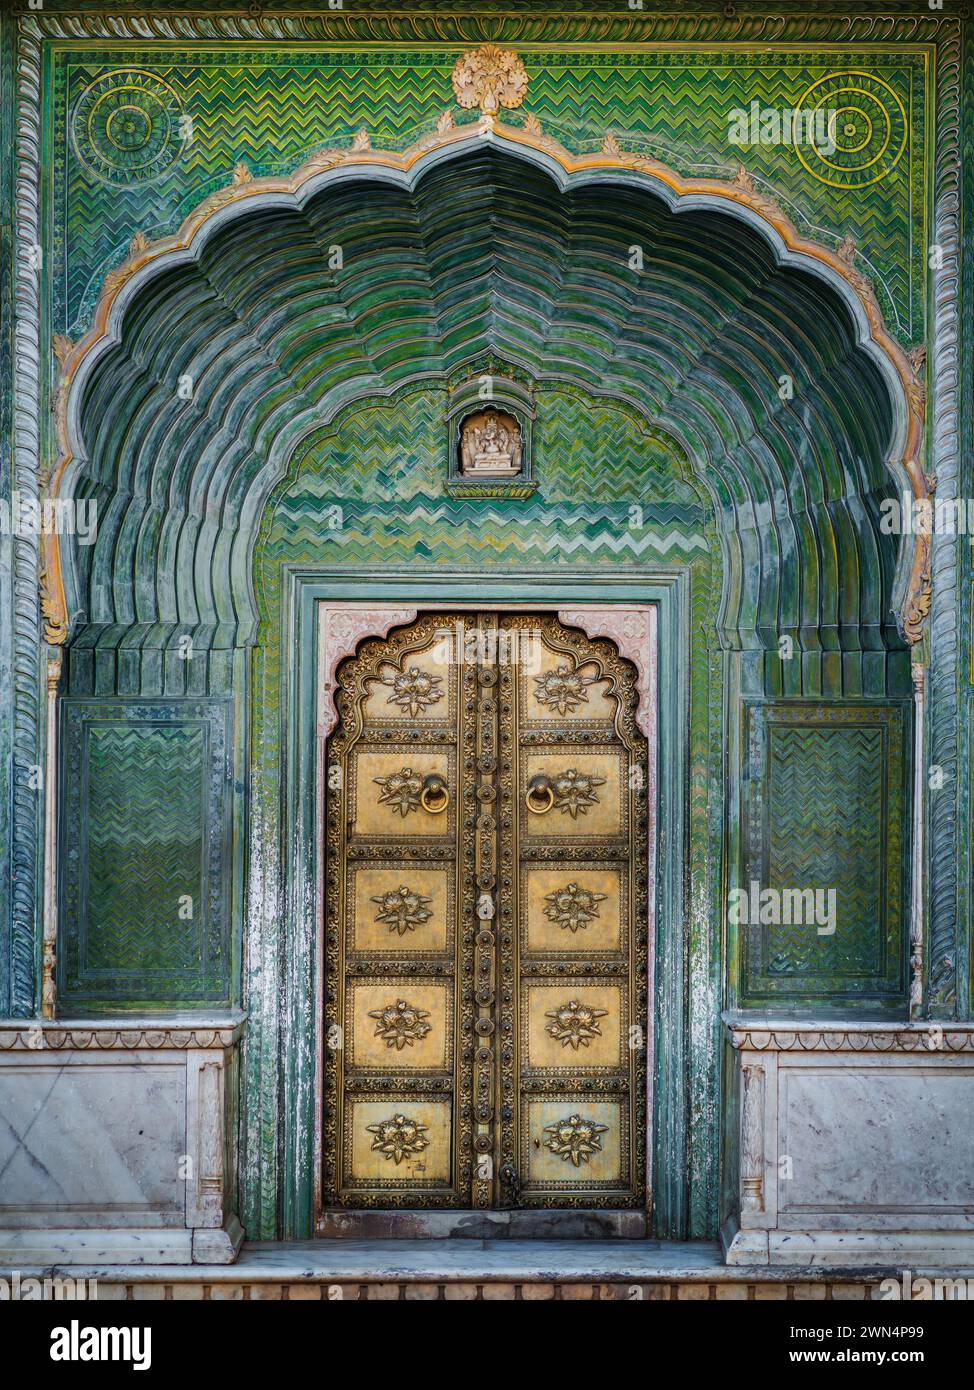 La porte verte historique du palais de la ville de Jaipur au Rajasthan, en Inde. Banque D'Images